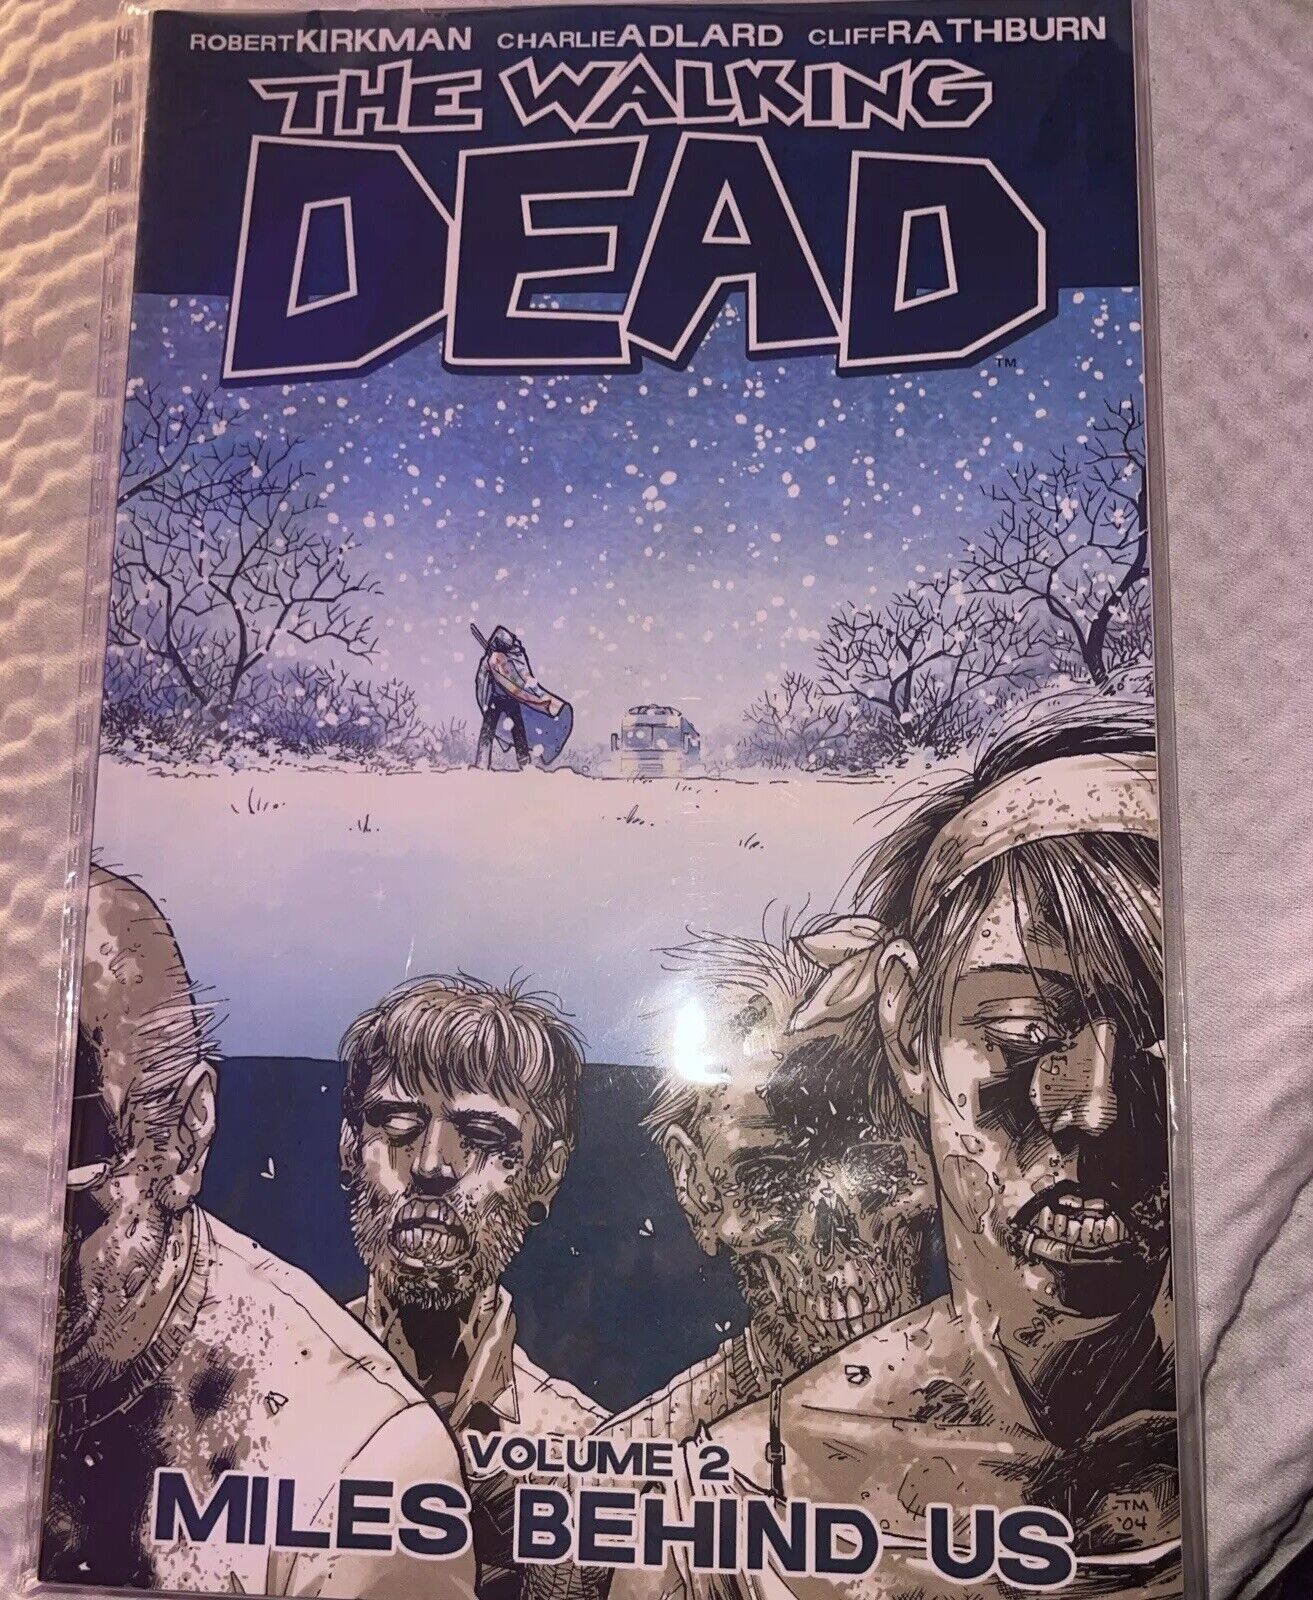 The Walking Dead #2 (Image Comics Malibu Comics October 2004)